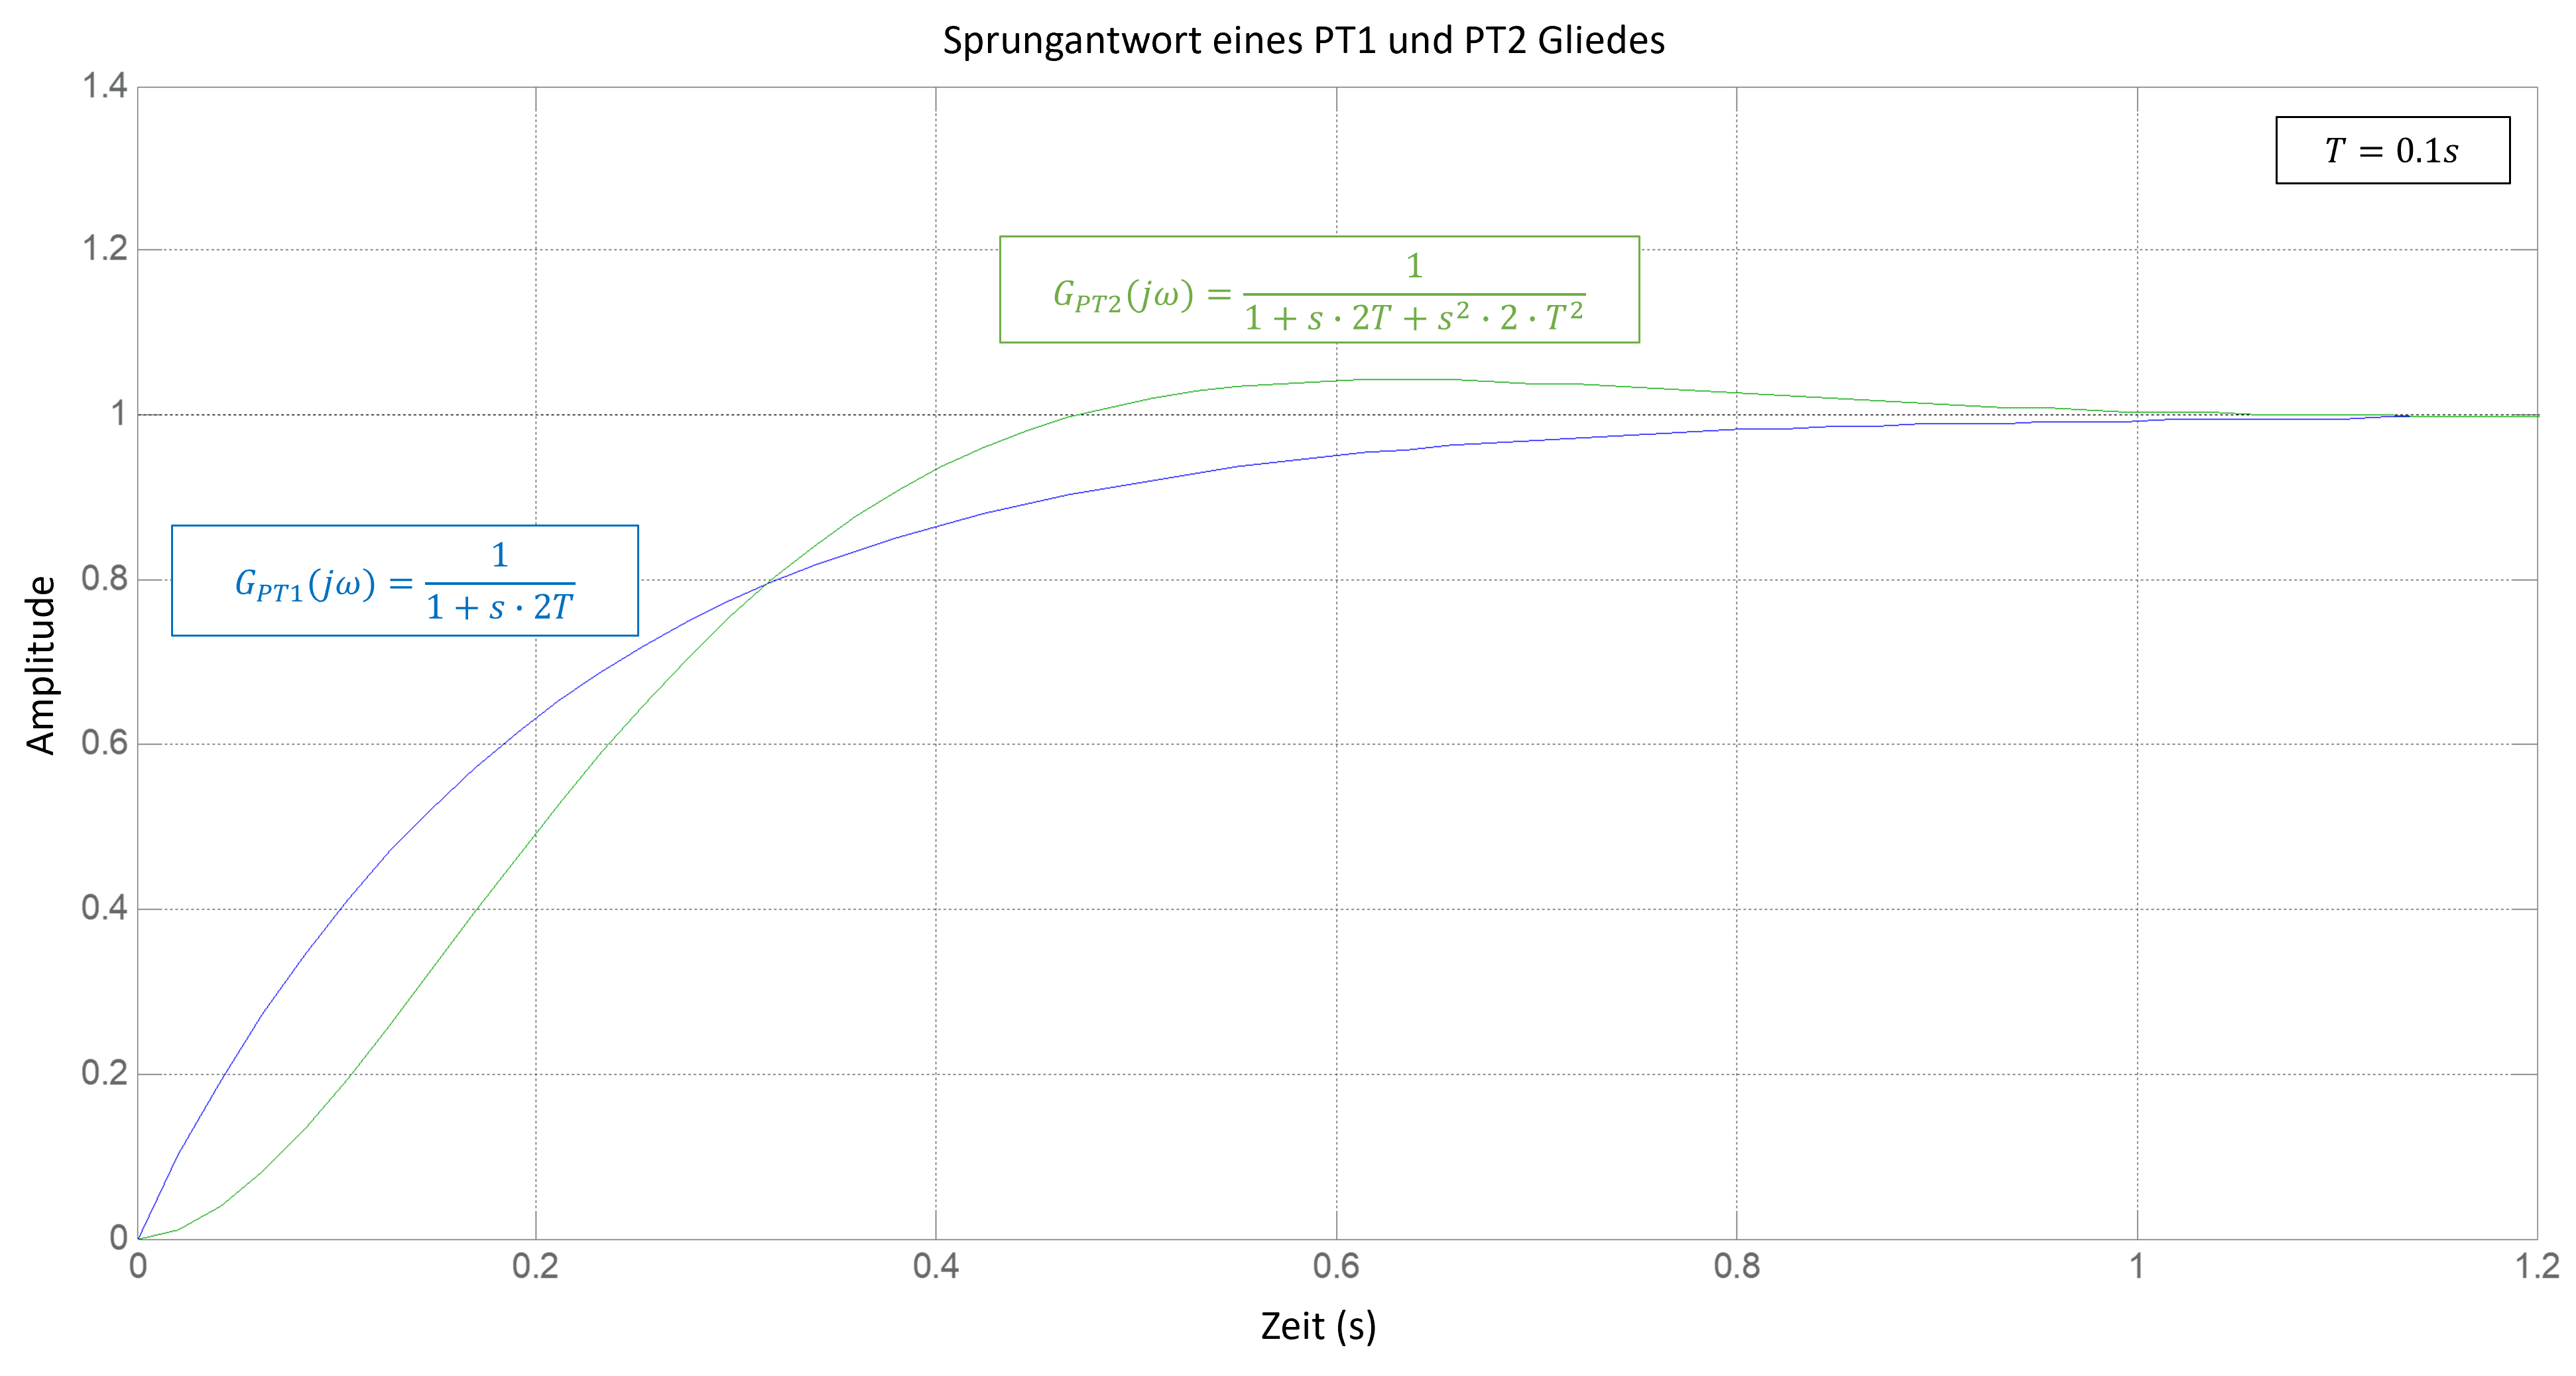 Sprungantwort eines PT1 und eines PT2 Gliedes gleicher Zeitkonstanten